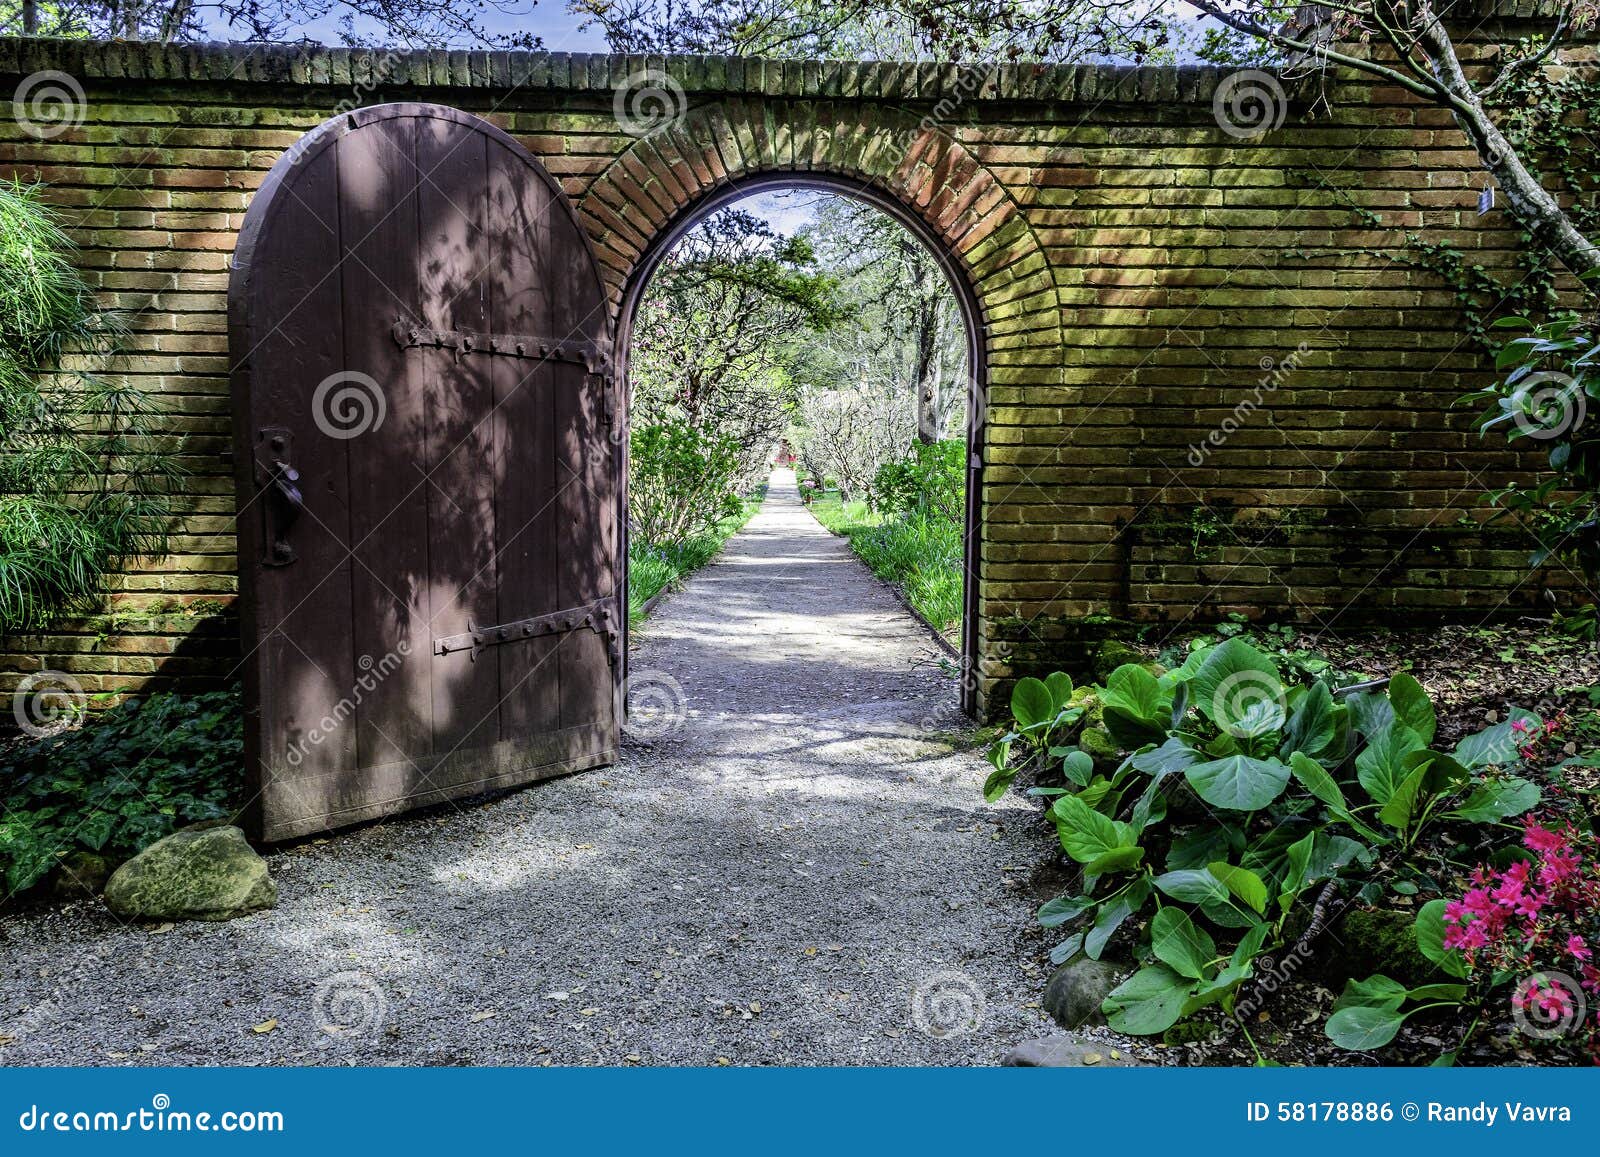 brick walled english garden arch gate